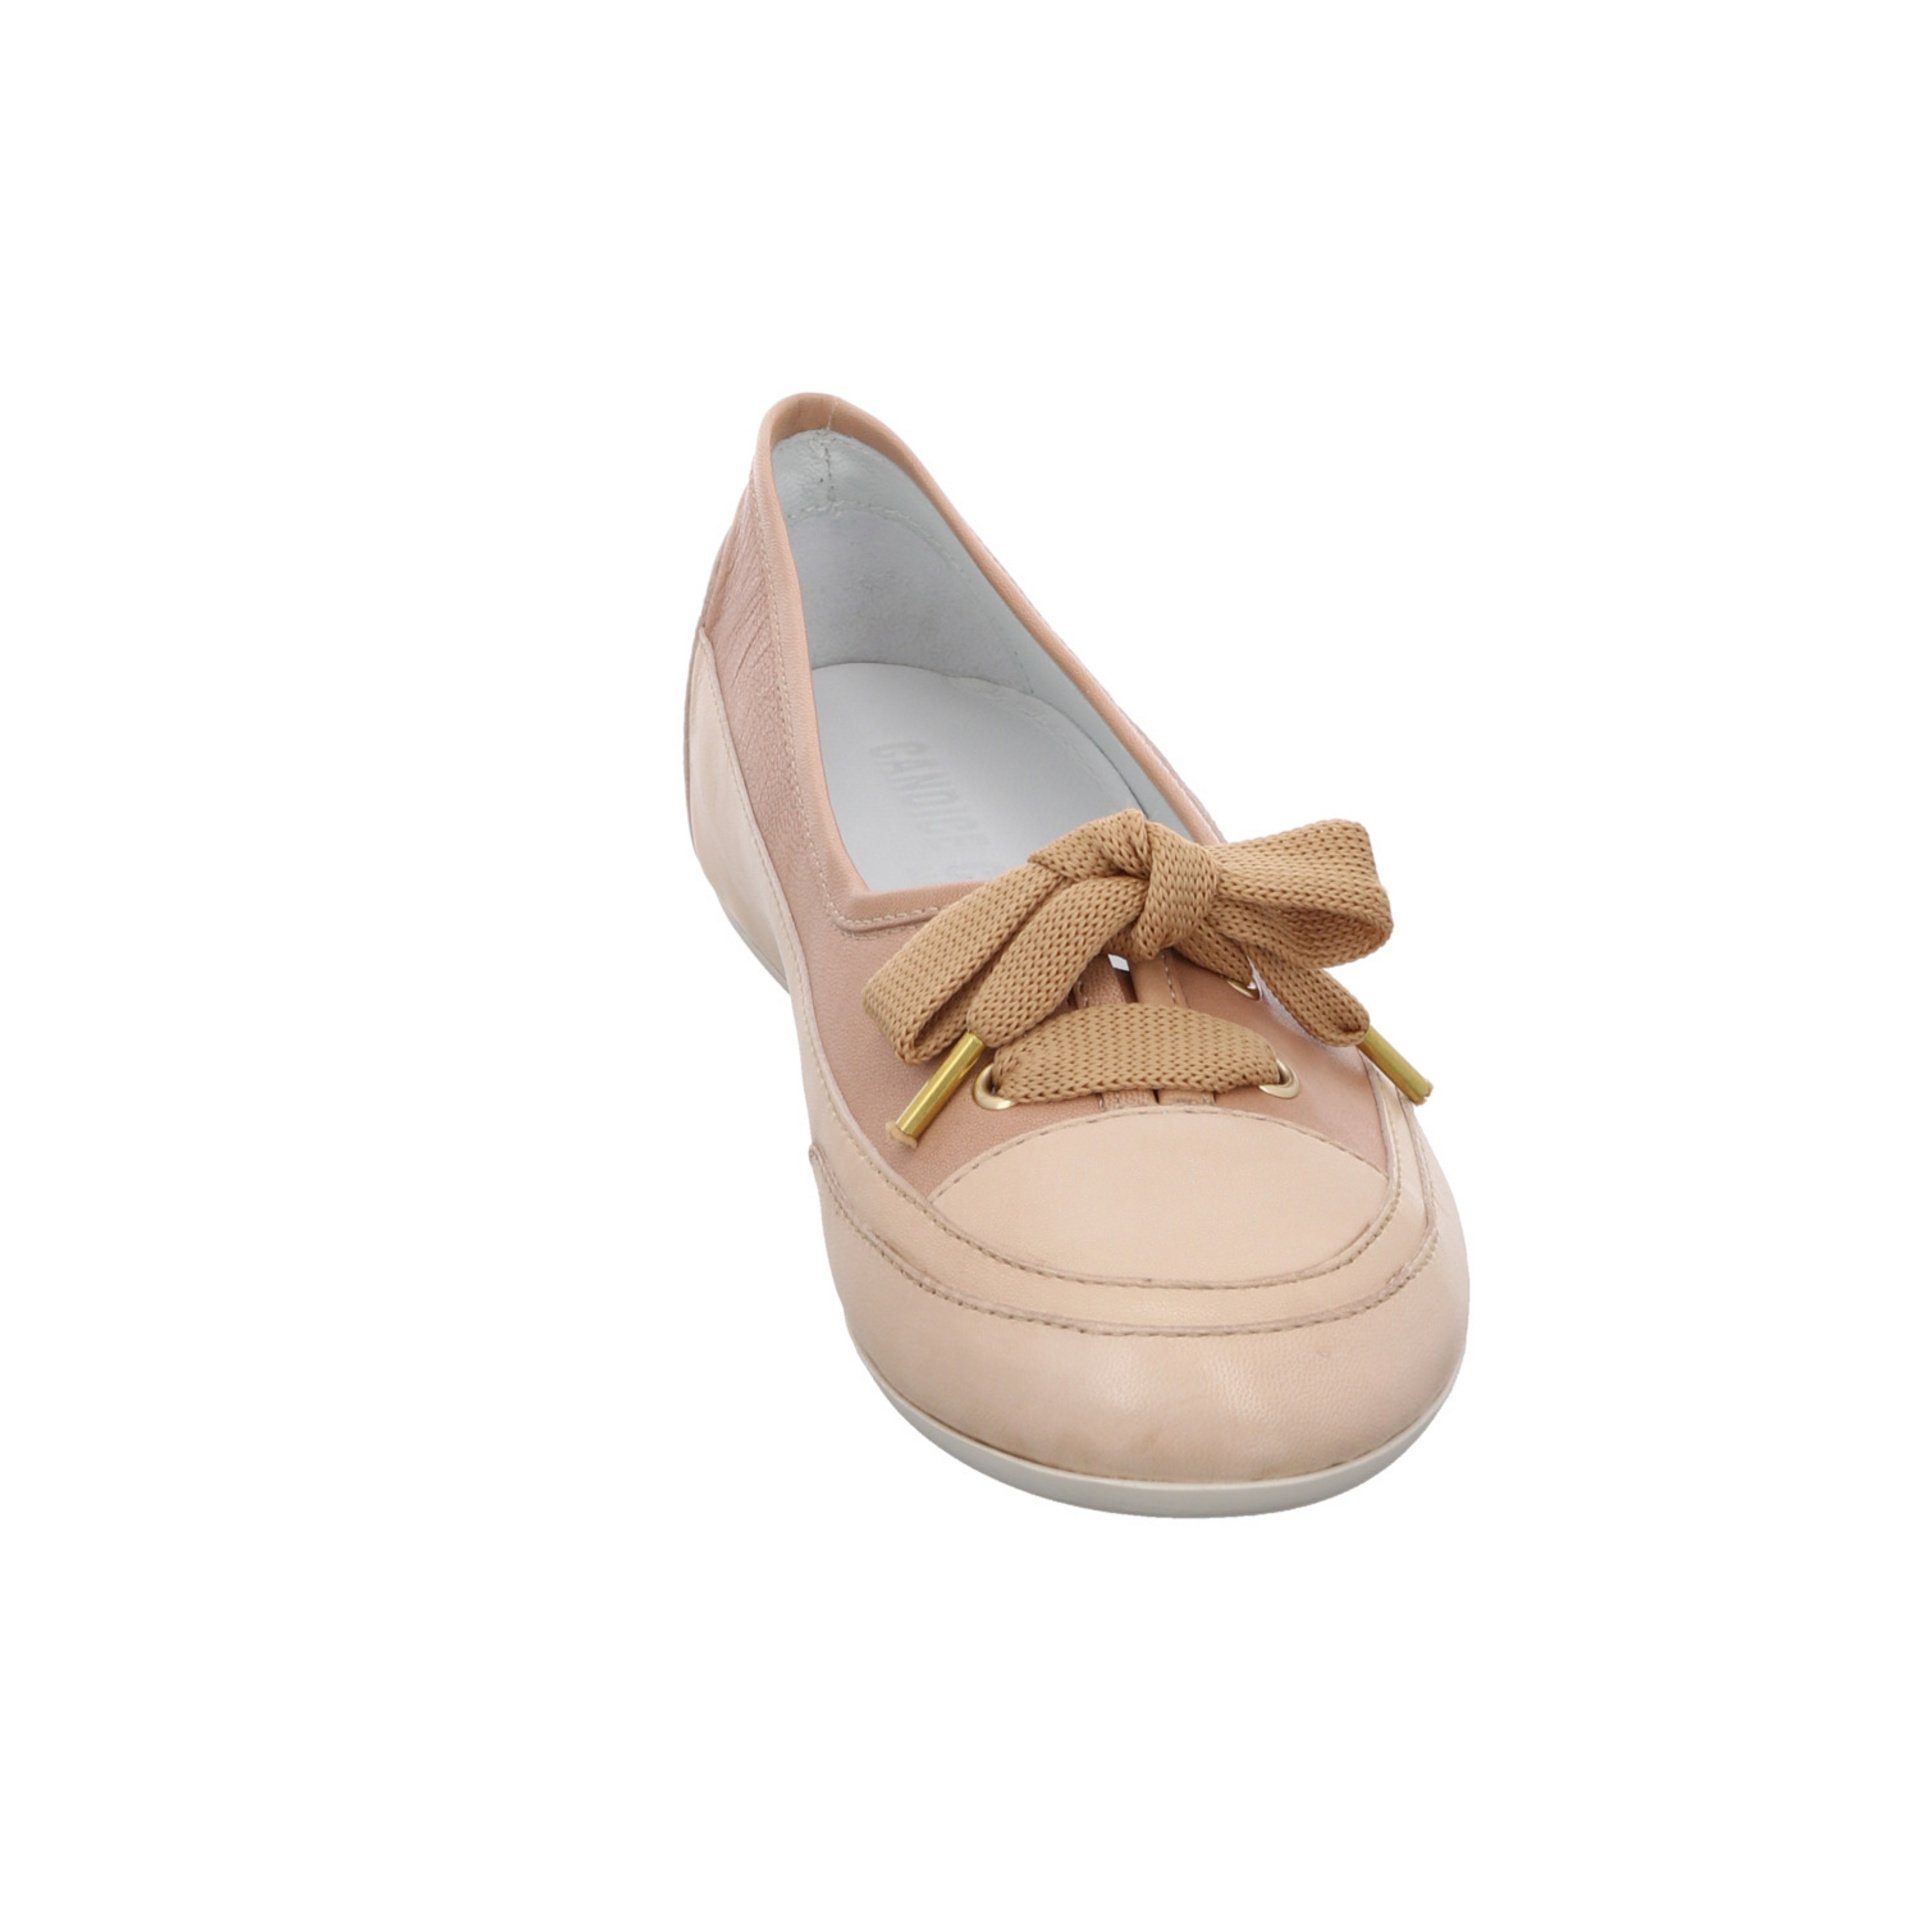 Ballerinas Flats Candice Cooper Bow Candy ecru/cappuccino Bequem Glattleder Ballerina Schuhe Ballerina